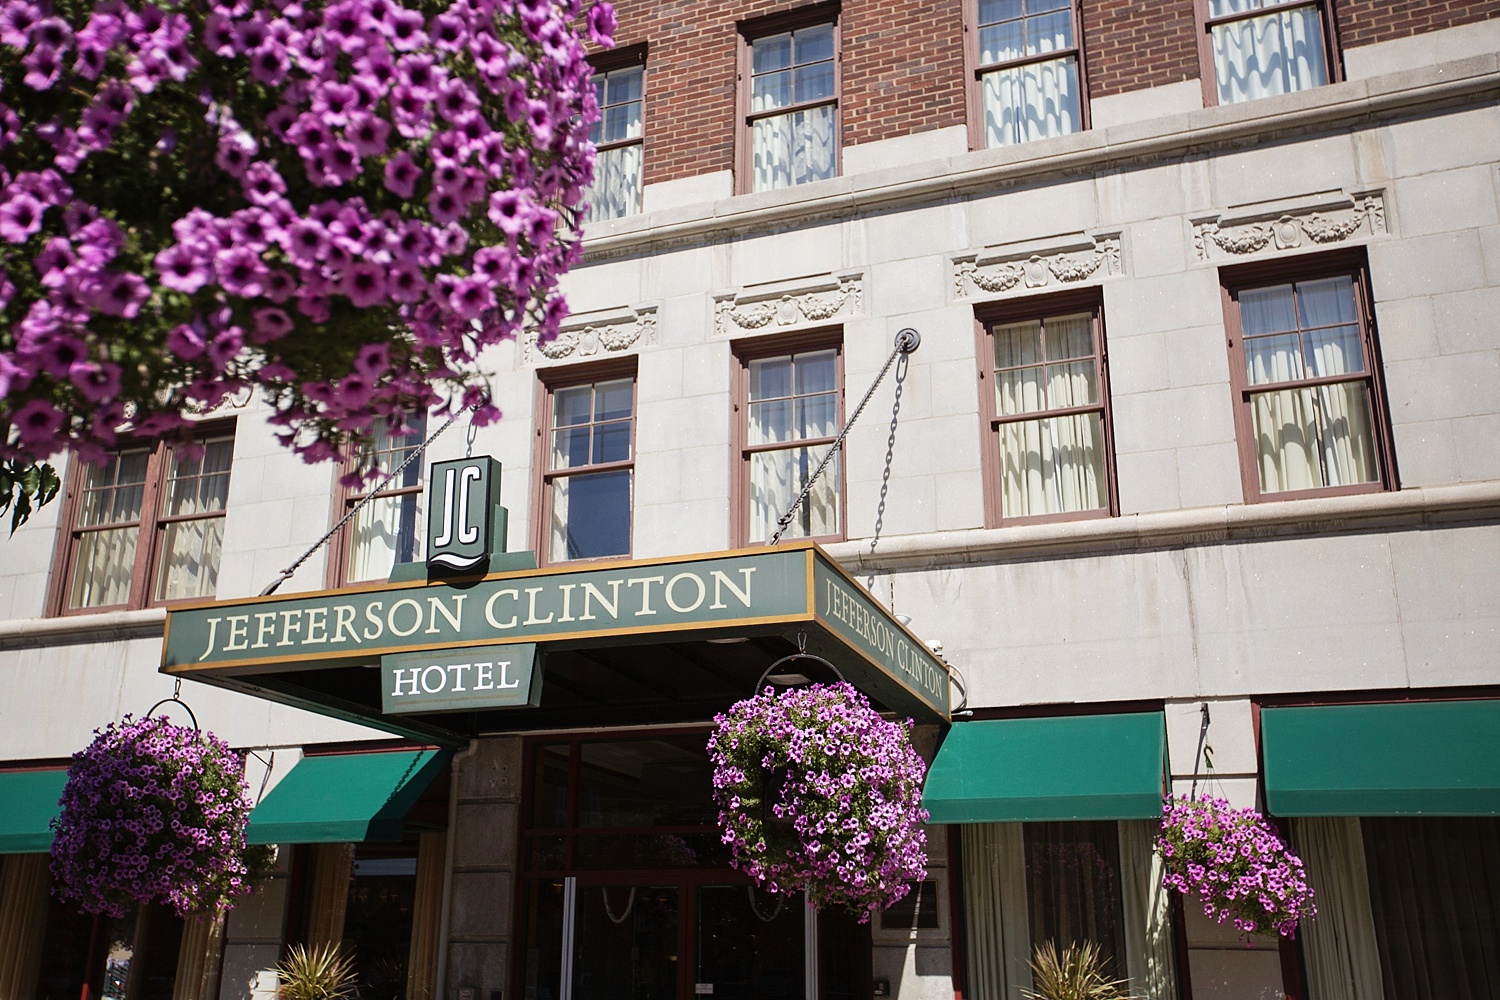 jefferson clinton hotel, syracuse, armory square, purple, petunias